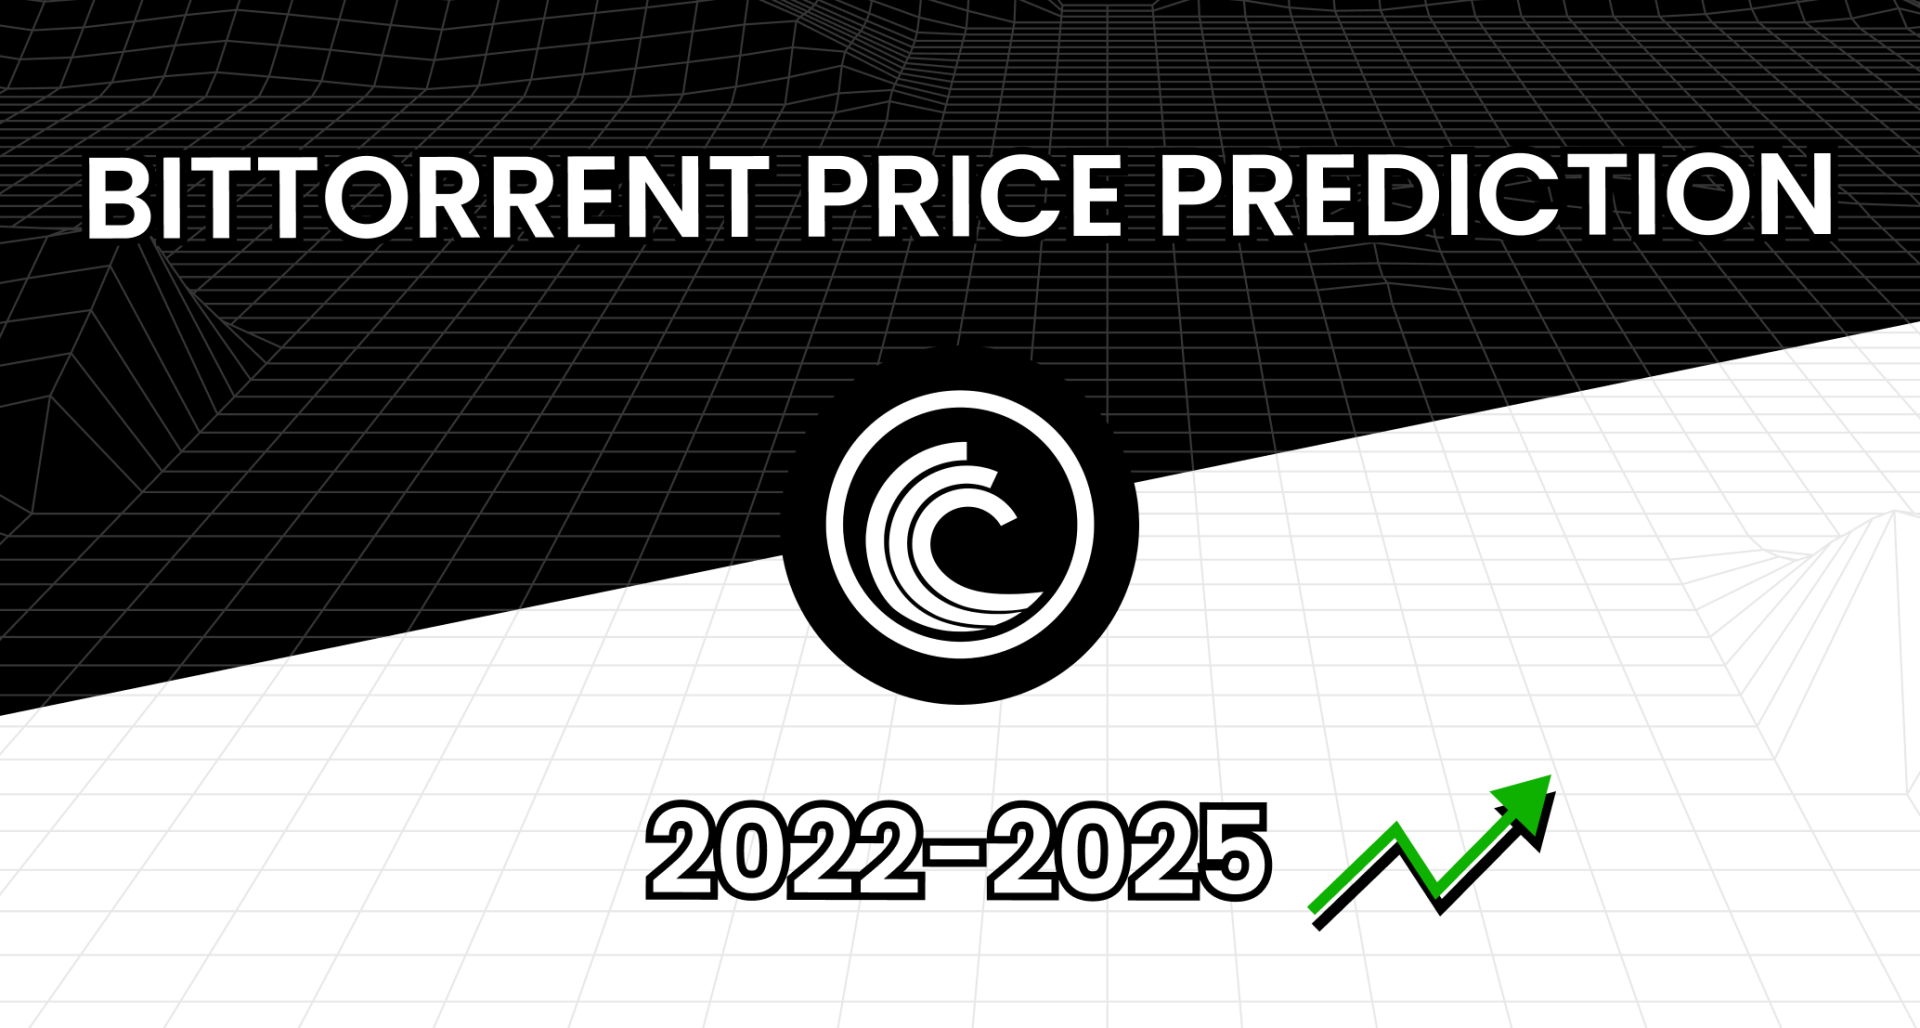 BitTorrent (BTT) Price Prediction